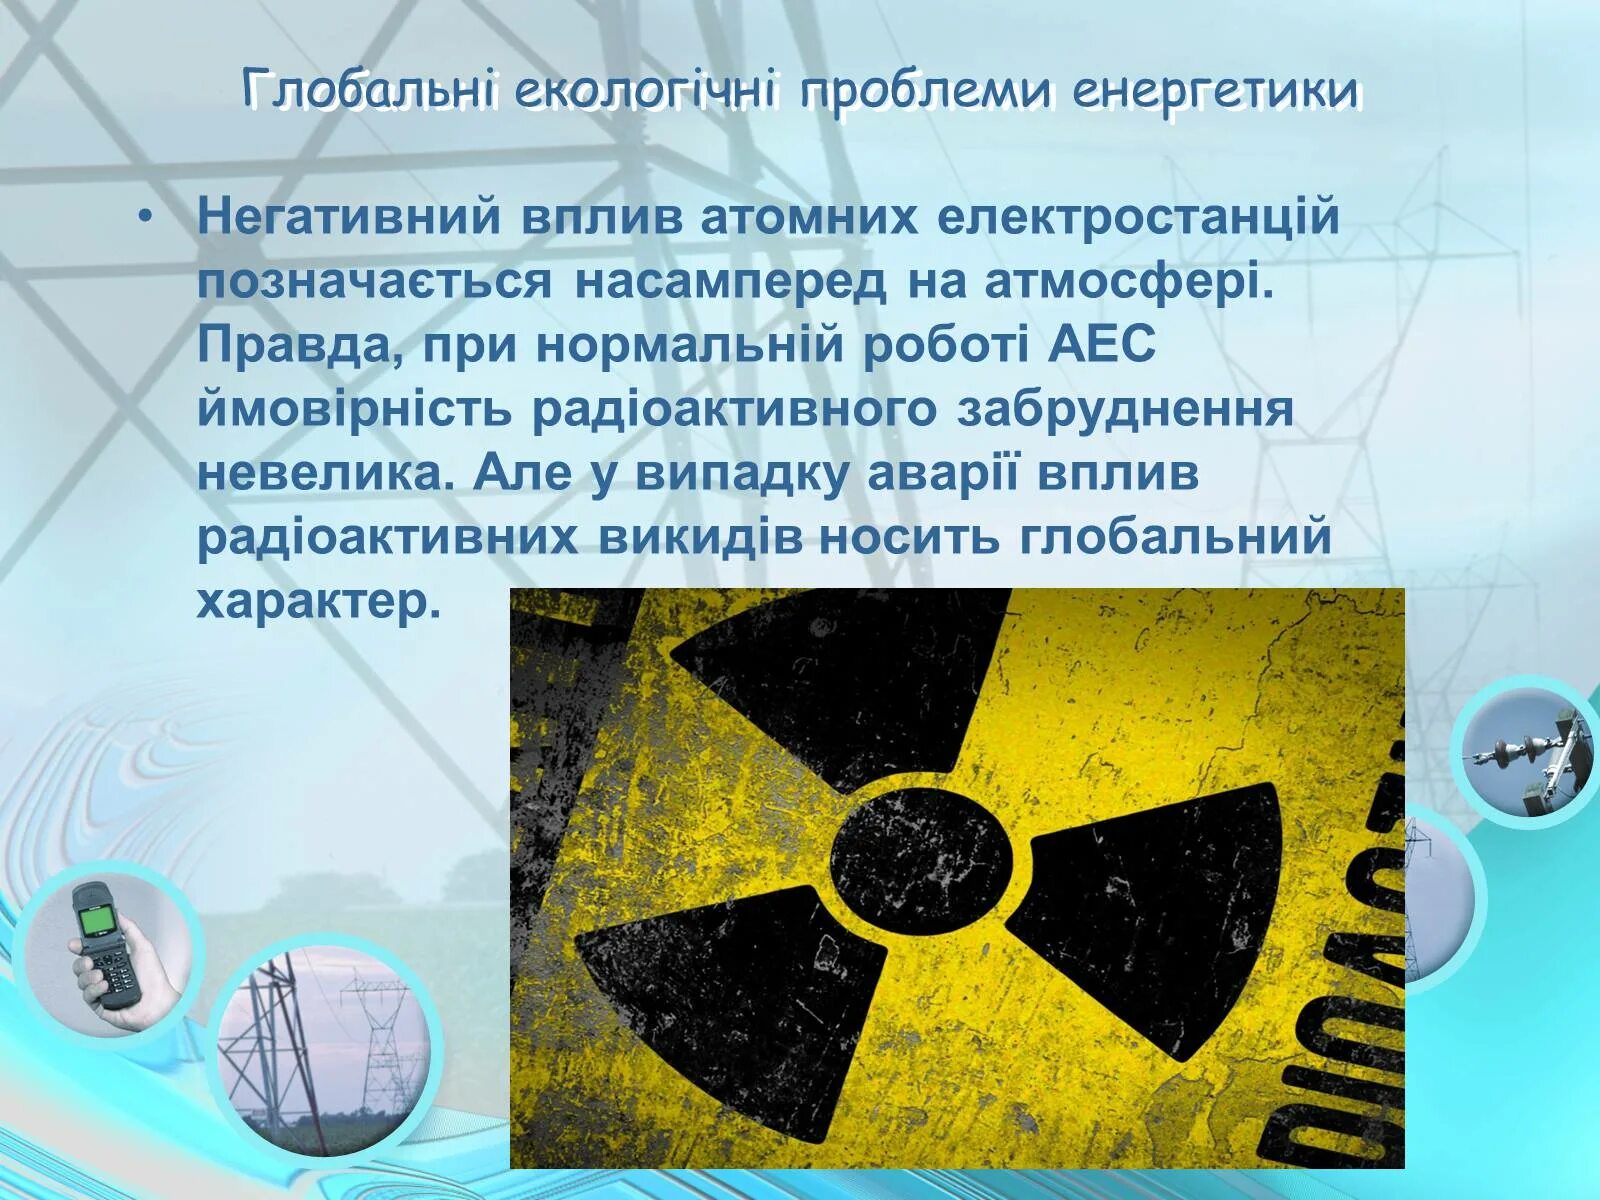 Экологические последствия аэс. Экологические проблемы атомной энергетики. Экологические проблемы атомных электростанций. Экологические проблемы ядерной энергетики. Ядерная Энергетика экологические проблемы.